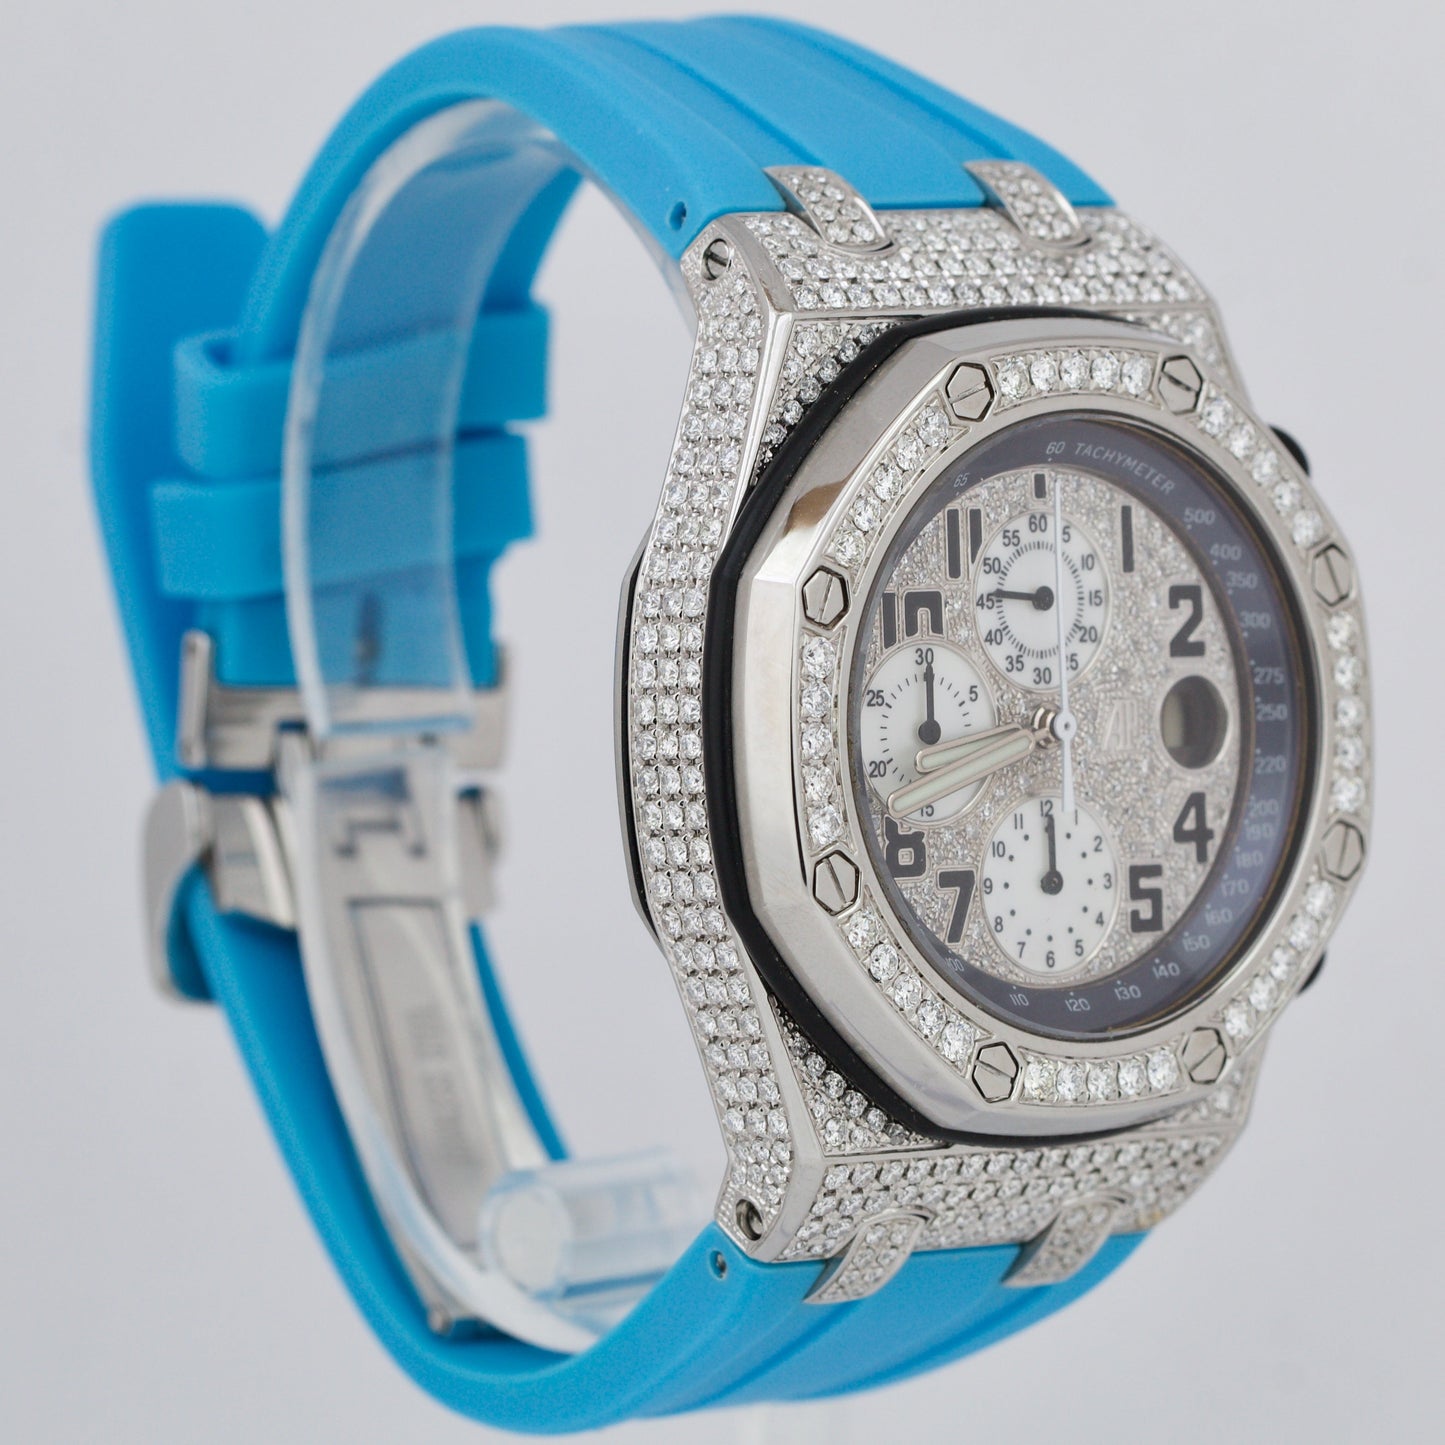 Audemars Piguet Royal Oak Offshore 42mm DIAMOND PAVE Blue Rubber 25940SK Watch